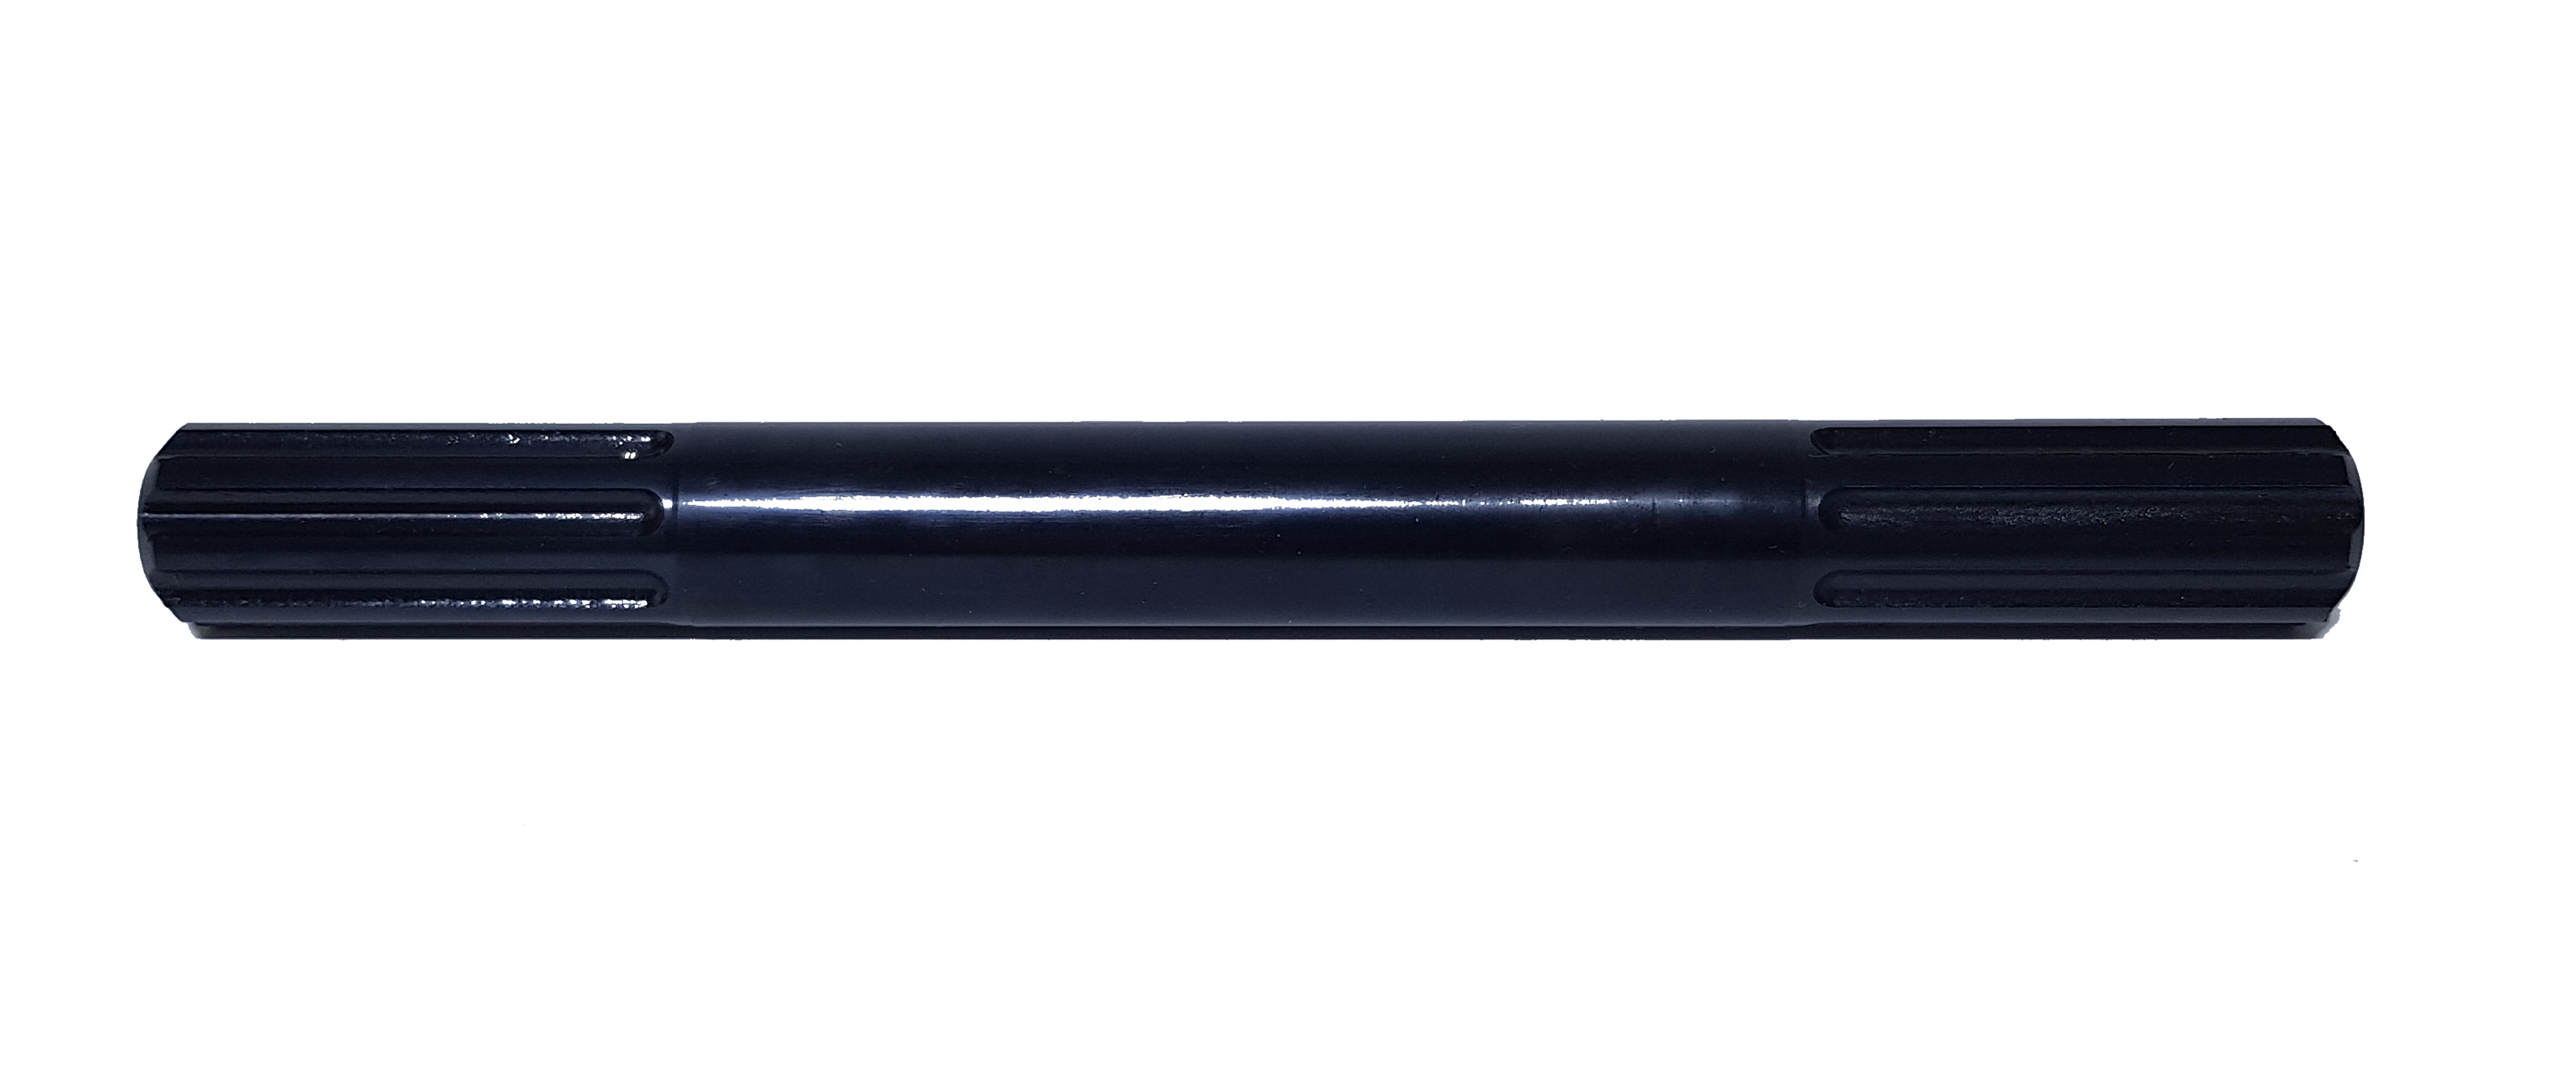 Pièce spéciale:  Axe de pédale 195 mm de large, acier argenté, poli